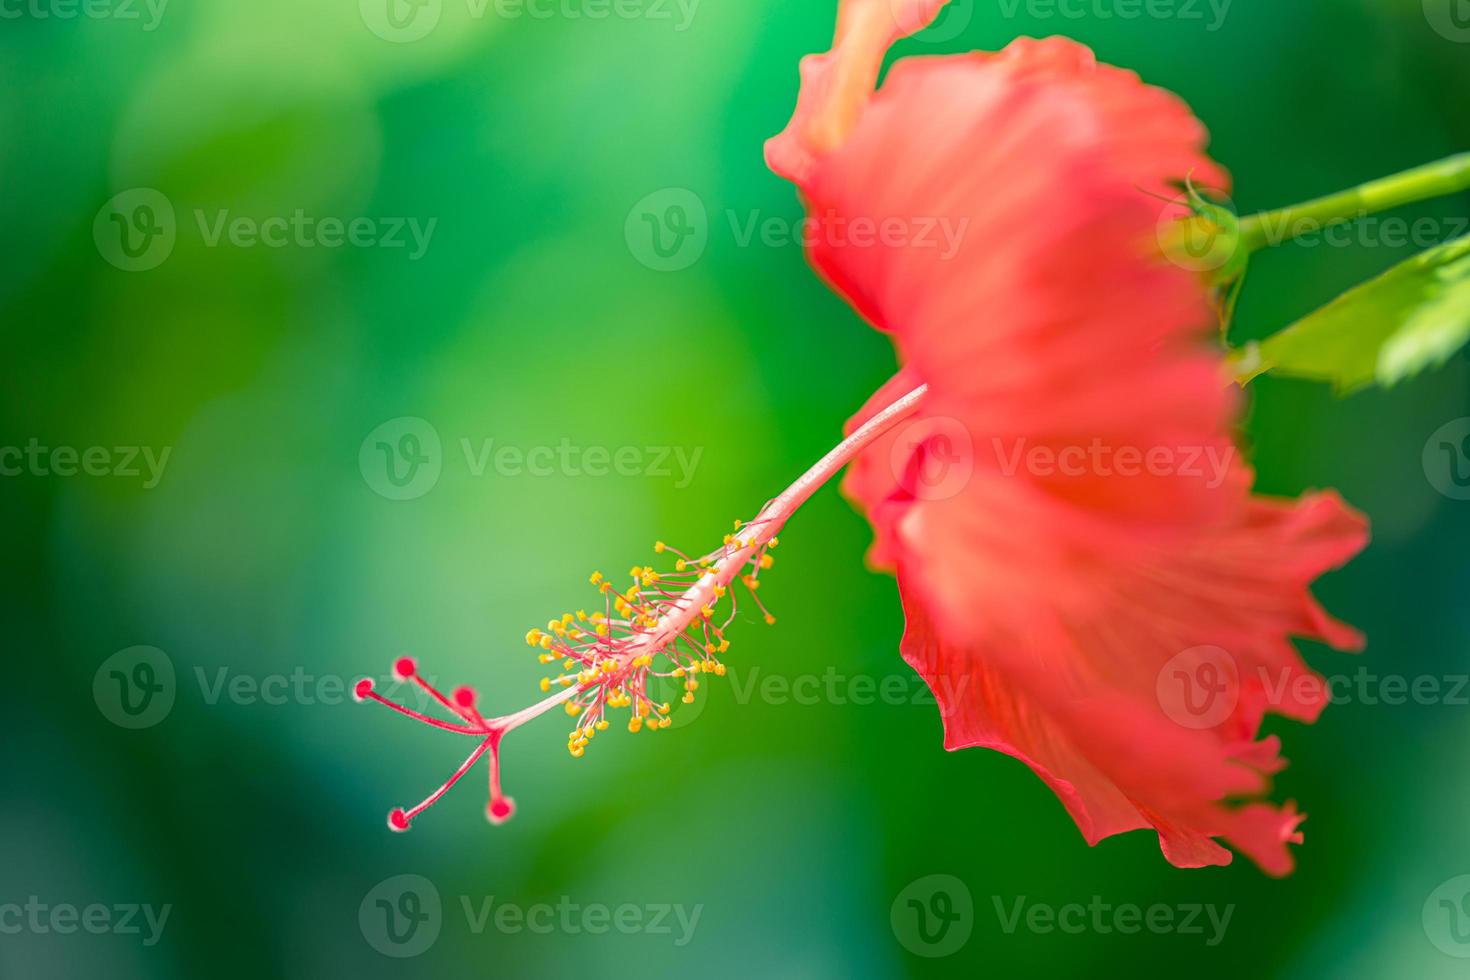 abstraktes naturmakro, hibiskusblüte mit unscharfem grünem laub. zen-naturnahaufnahme, helle farben, sonniger tropischer gartenblumenhintergrund. idyllisch blühende exotische blume foto